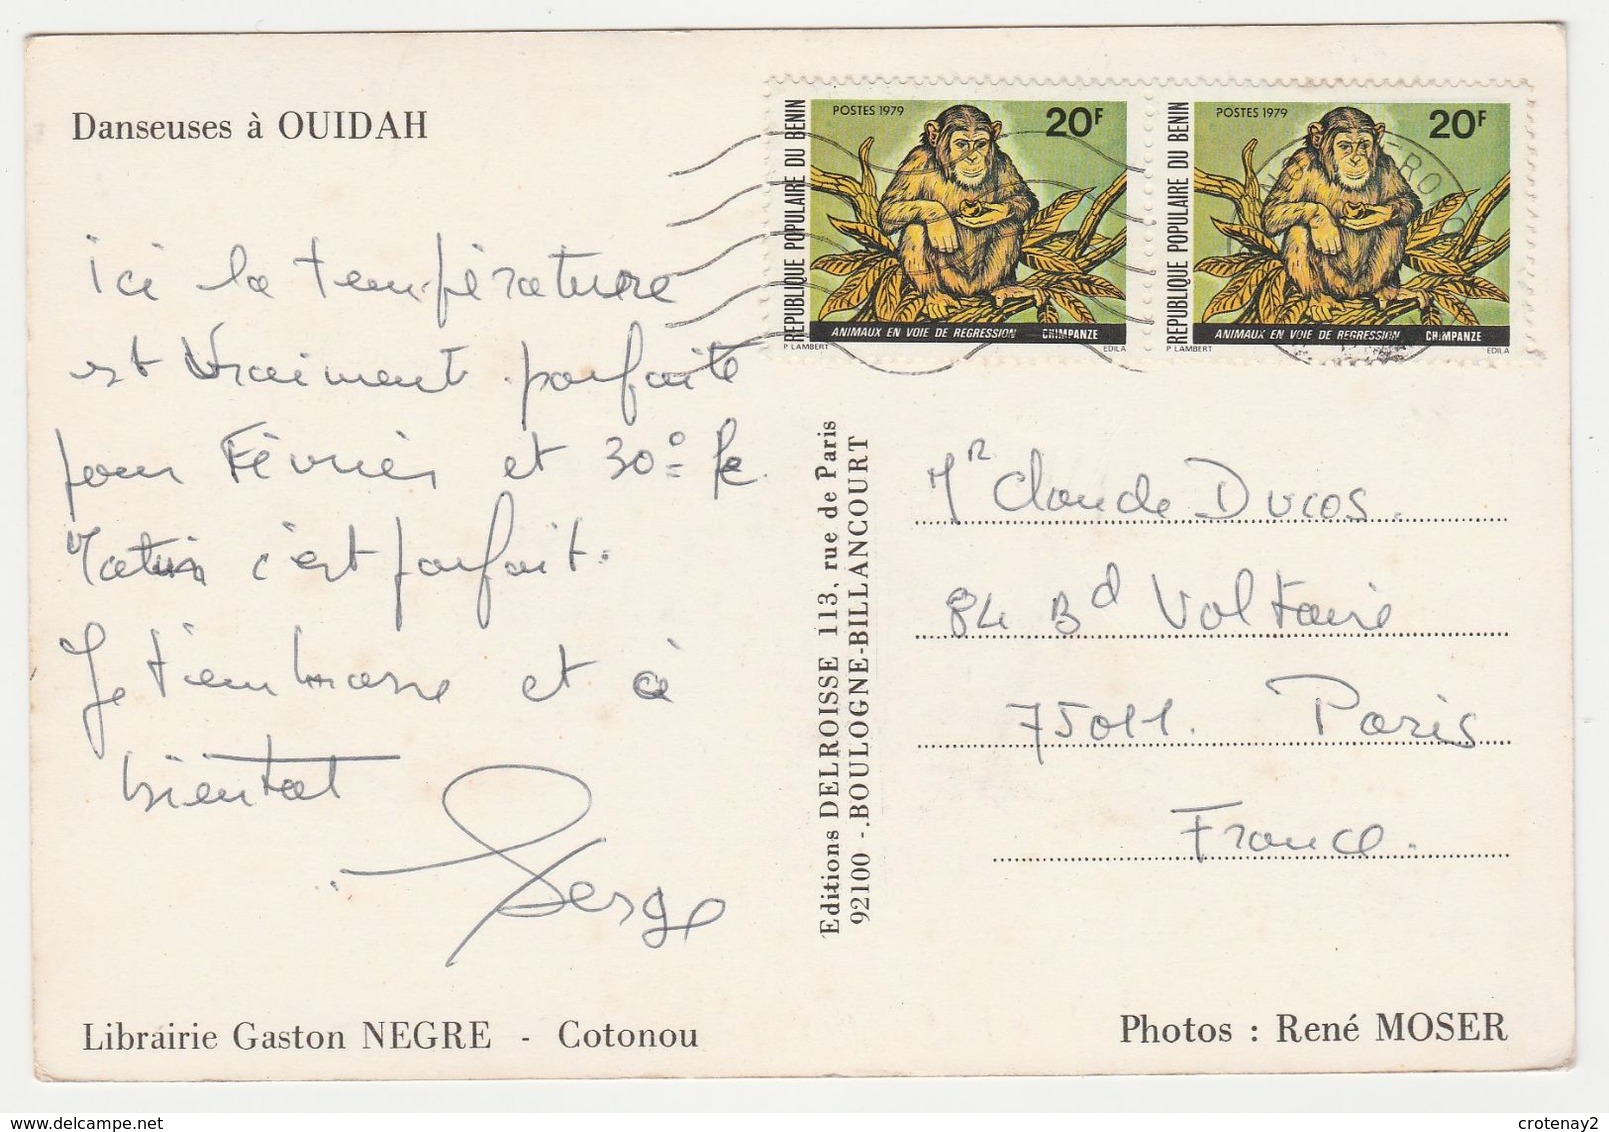 BENIN Danseuses à OUIDAH Librairie Gaston NEGRE Photos René MOSER En 1979 VOIR DOS TIMBRES - Benin